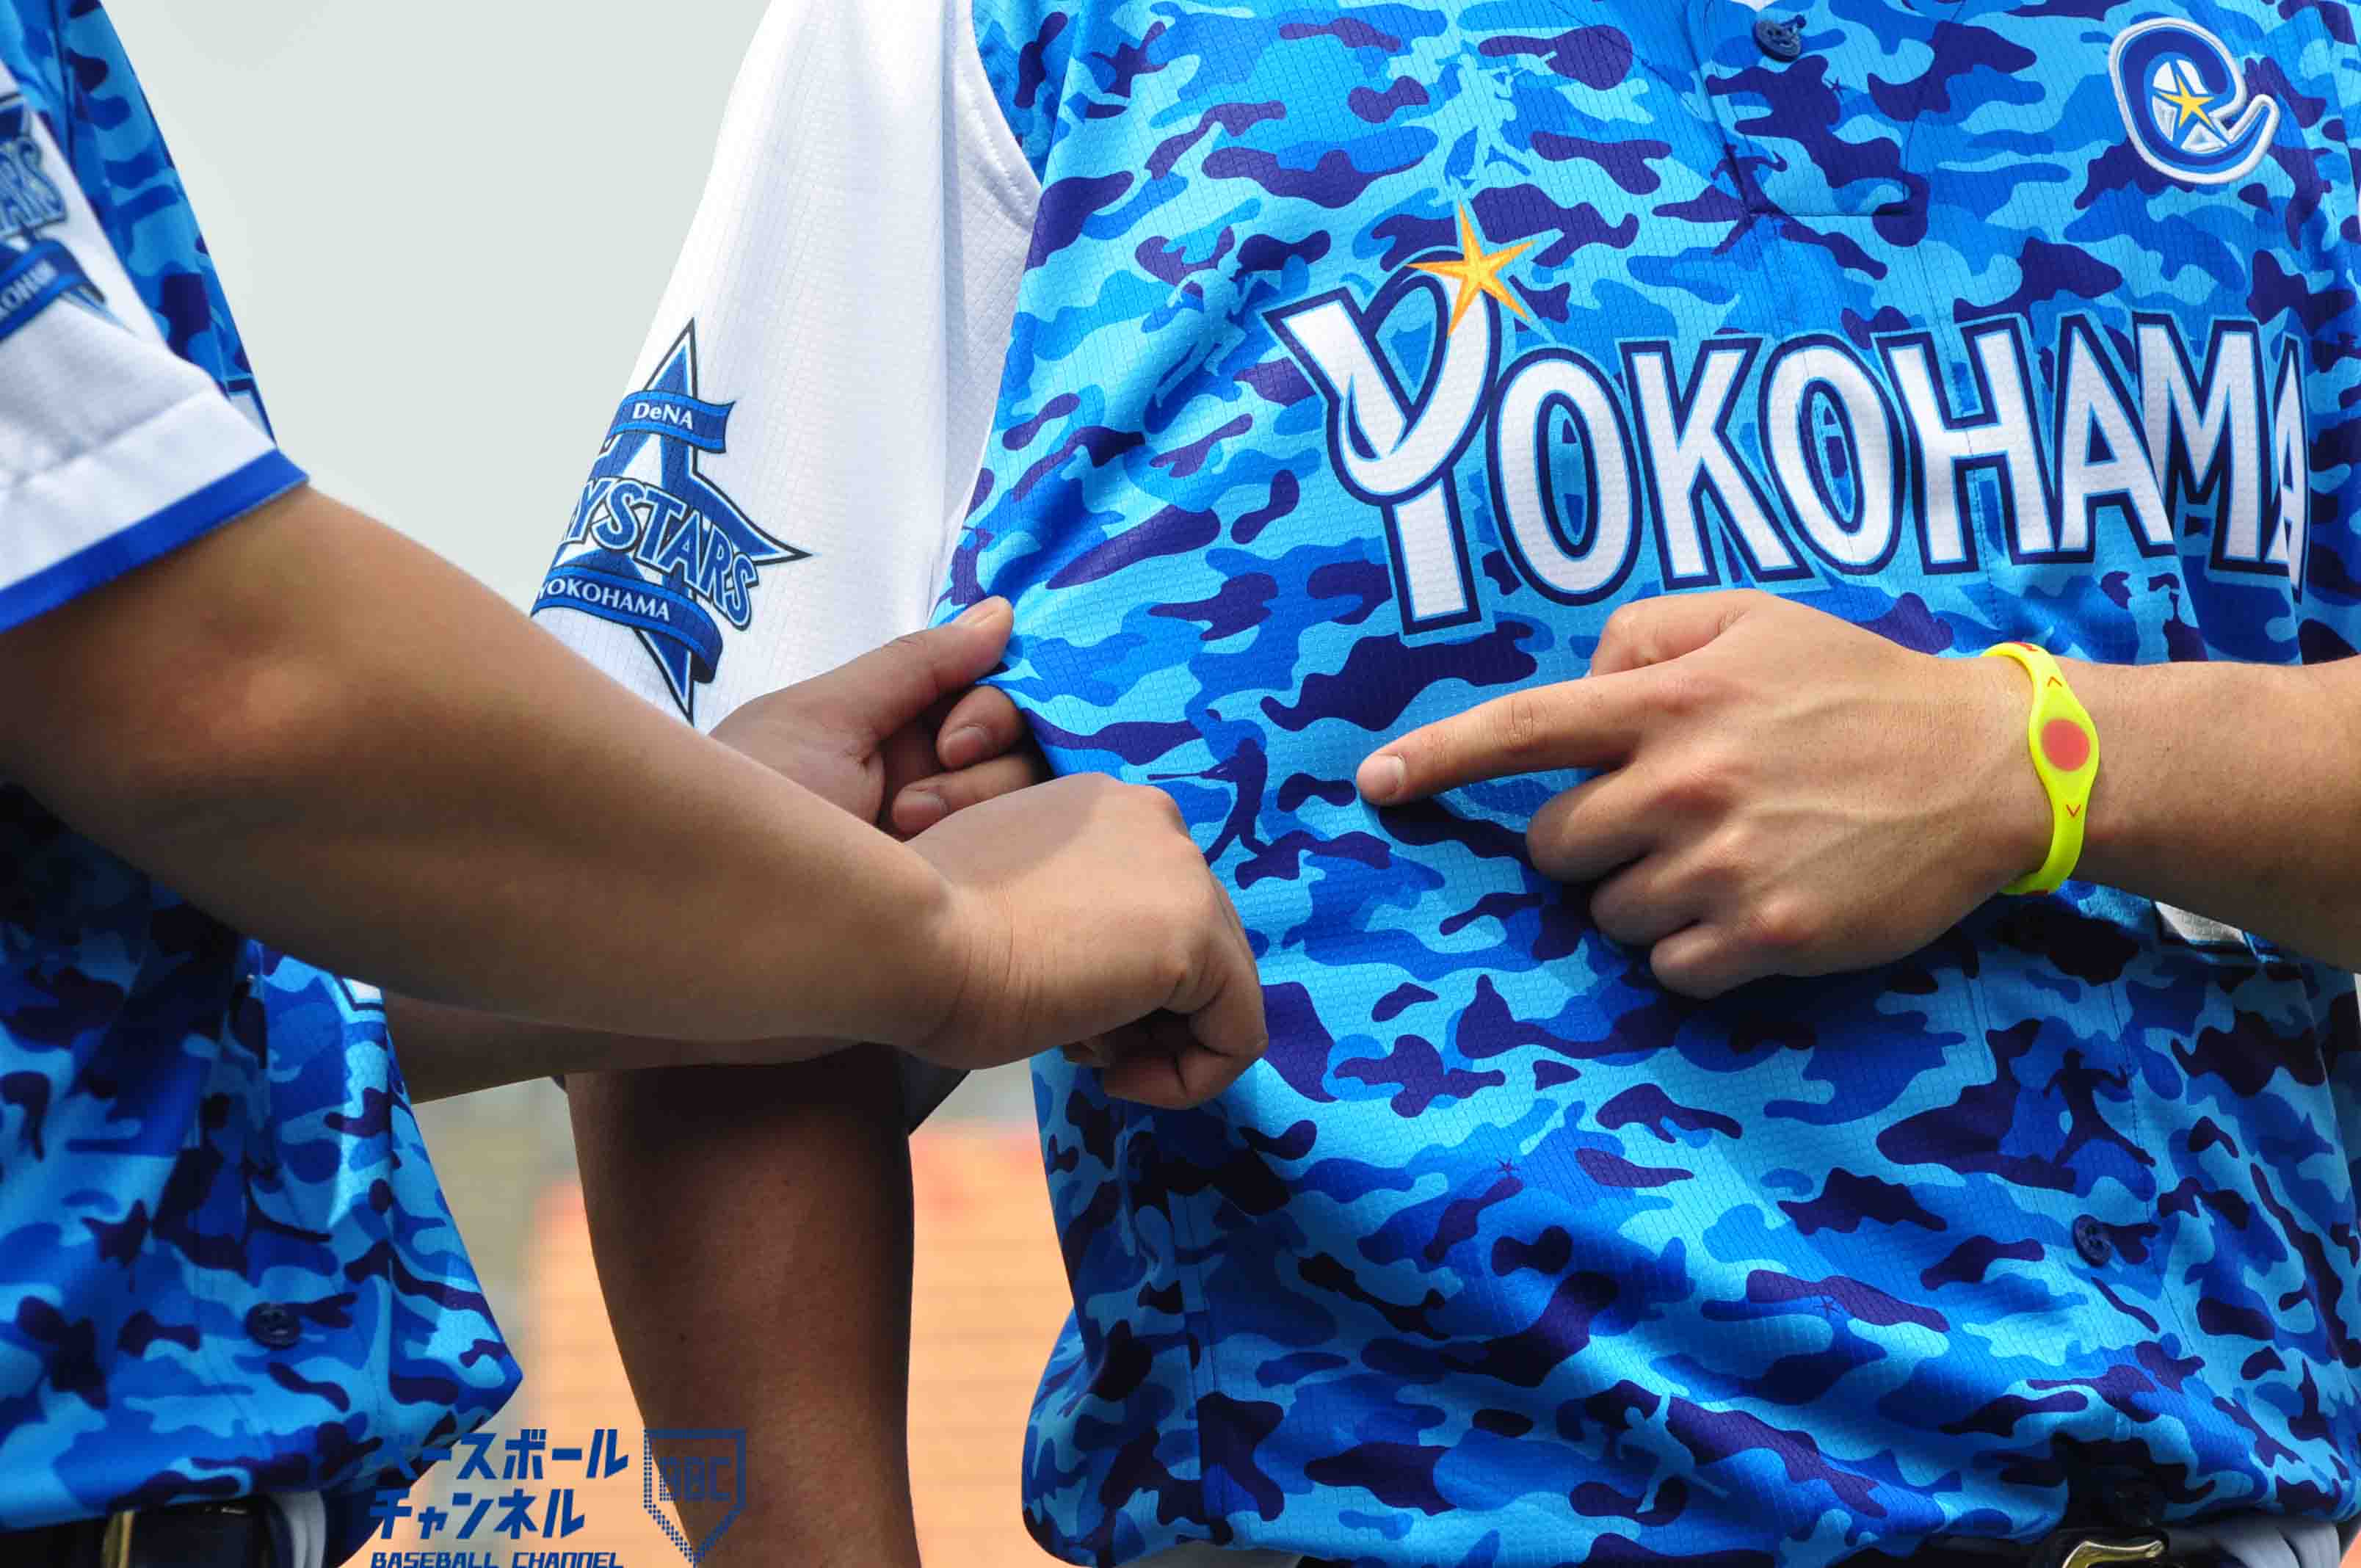 横浜denaベイスターズ Yokohama Star Night 15 選手着用のスペシャルユニフォームデザイン決定 ベースボールチャンネル Baseball Channel